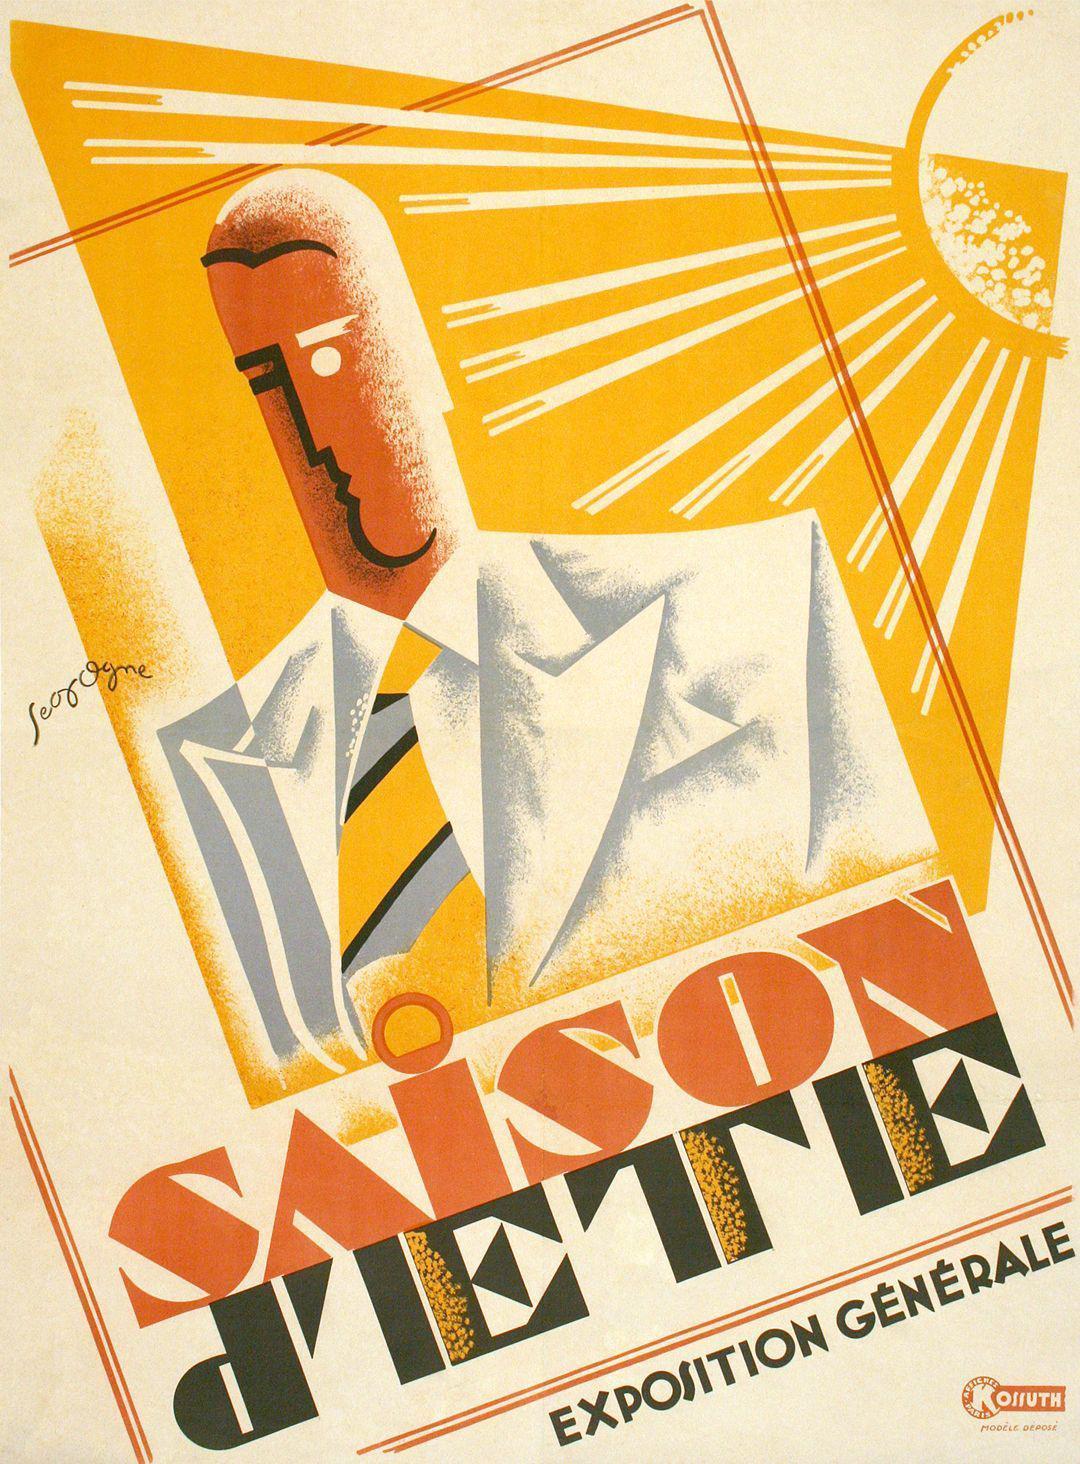 Saison D'Ete- Exposition Generale Poster by Pierre Segogne Art Deco